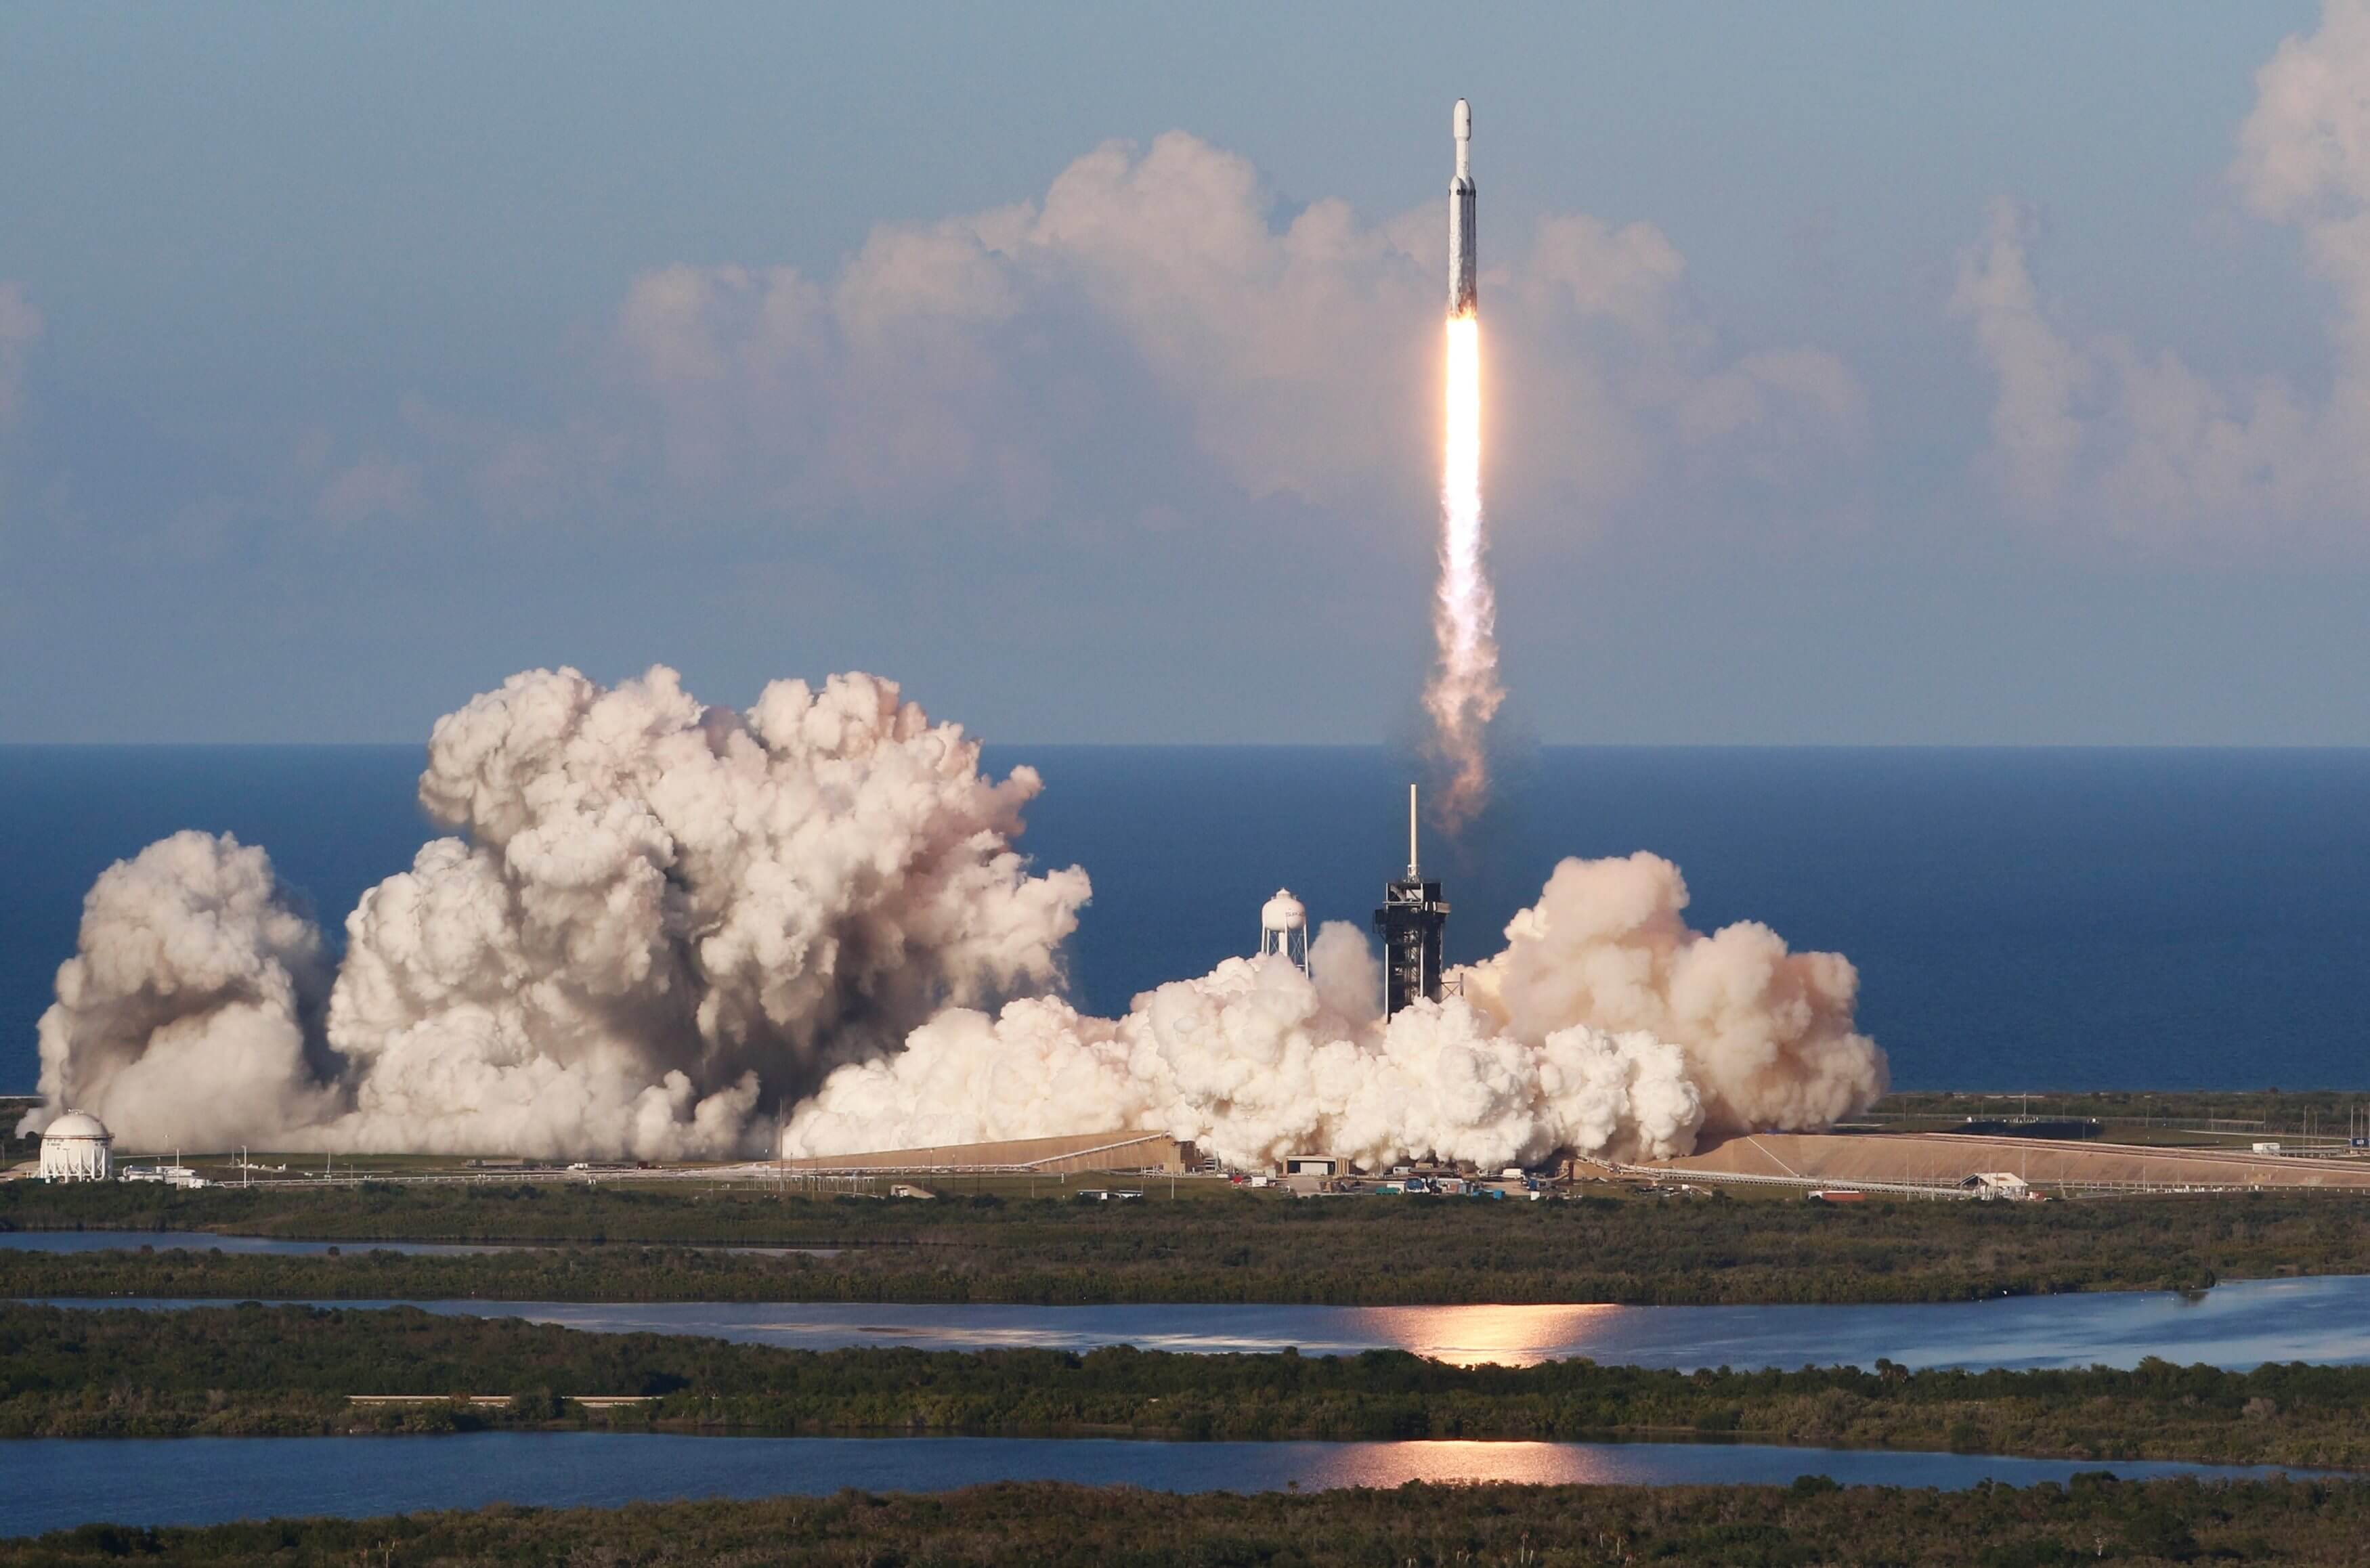 Κομμάτι του Falcon Heavy επέστρεψε από το Διάστημα και χάθηκε στη θαλασσοταραχή